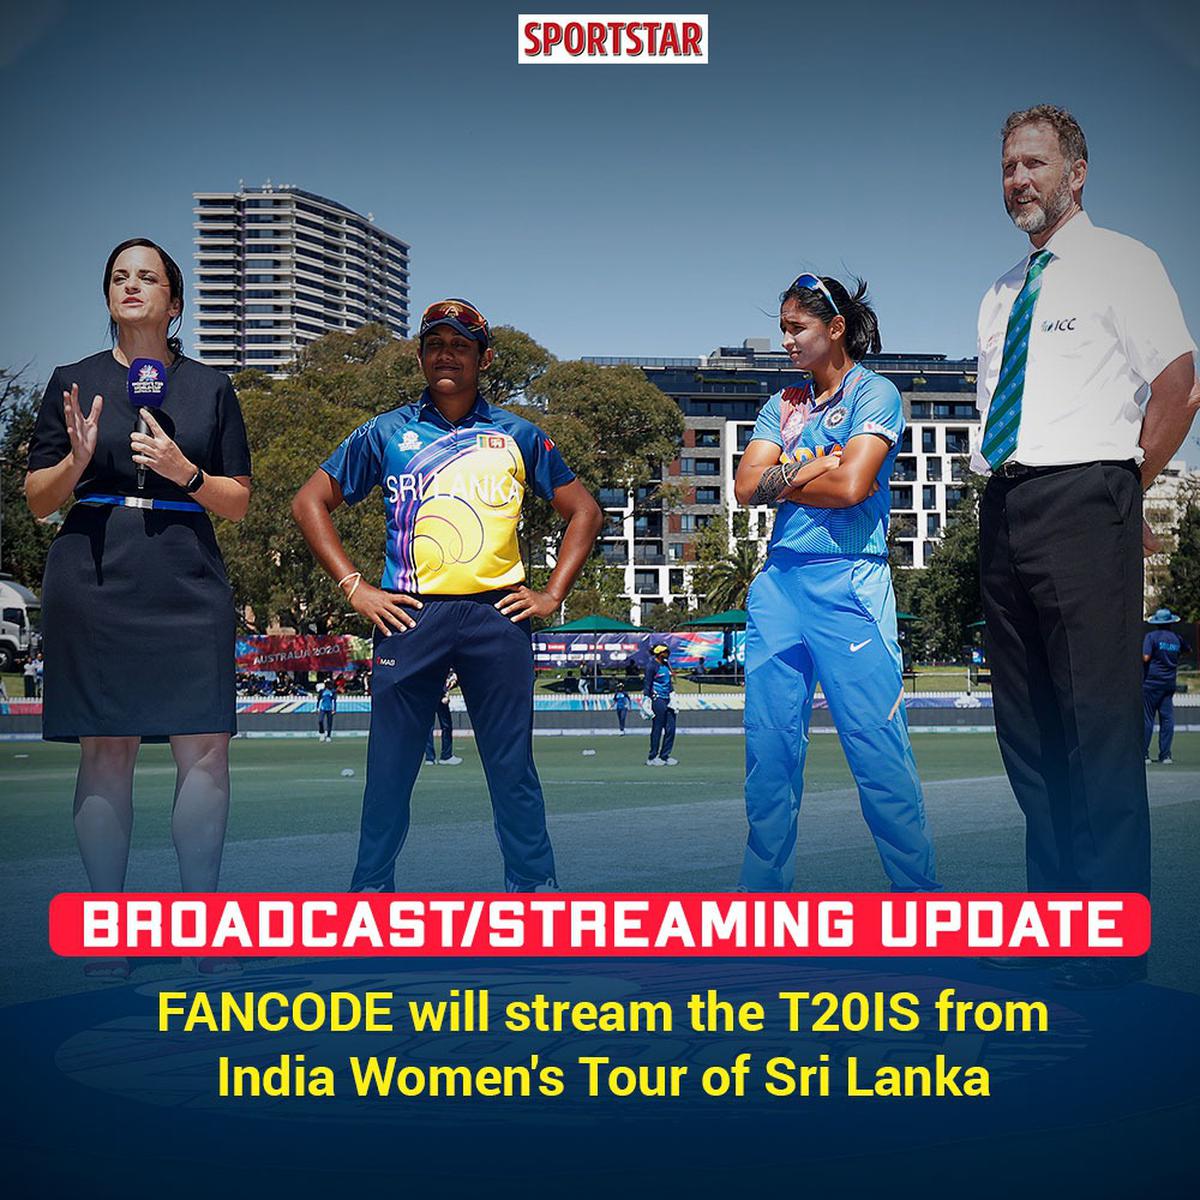 IND-W v SL-W 1st T20I Live Updates: भारत की हरमनप्रीत कौर बनाम अथापथु की श्रीलंका में बल्लेबाजी करने का विकल्प